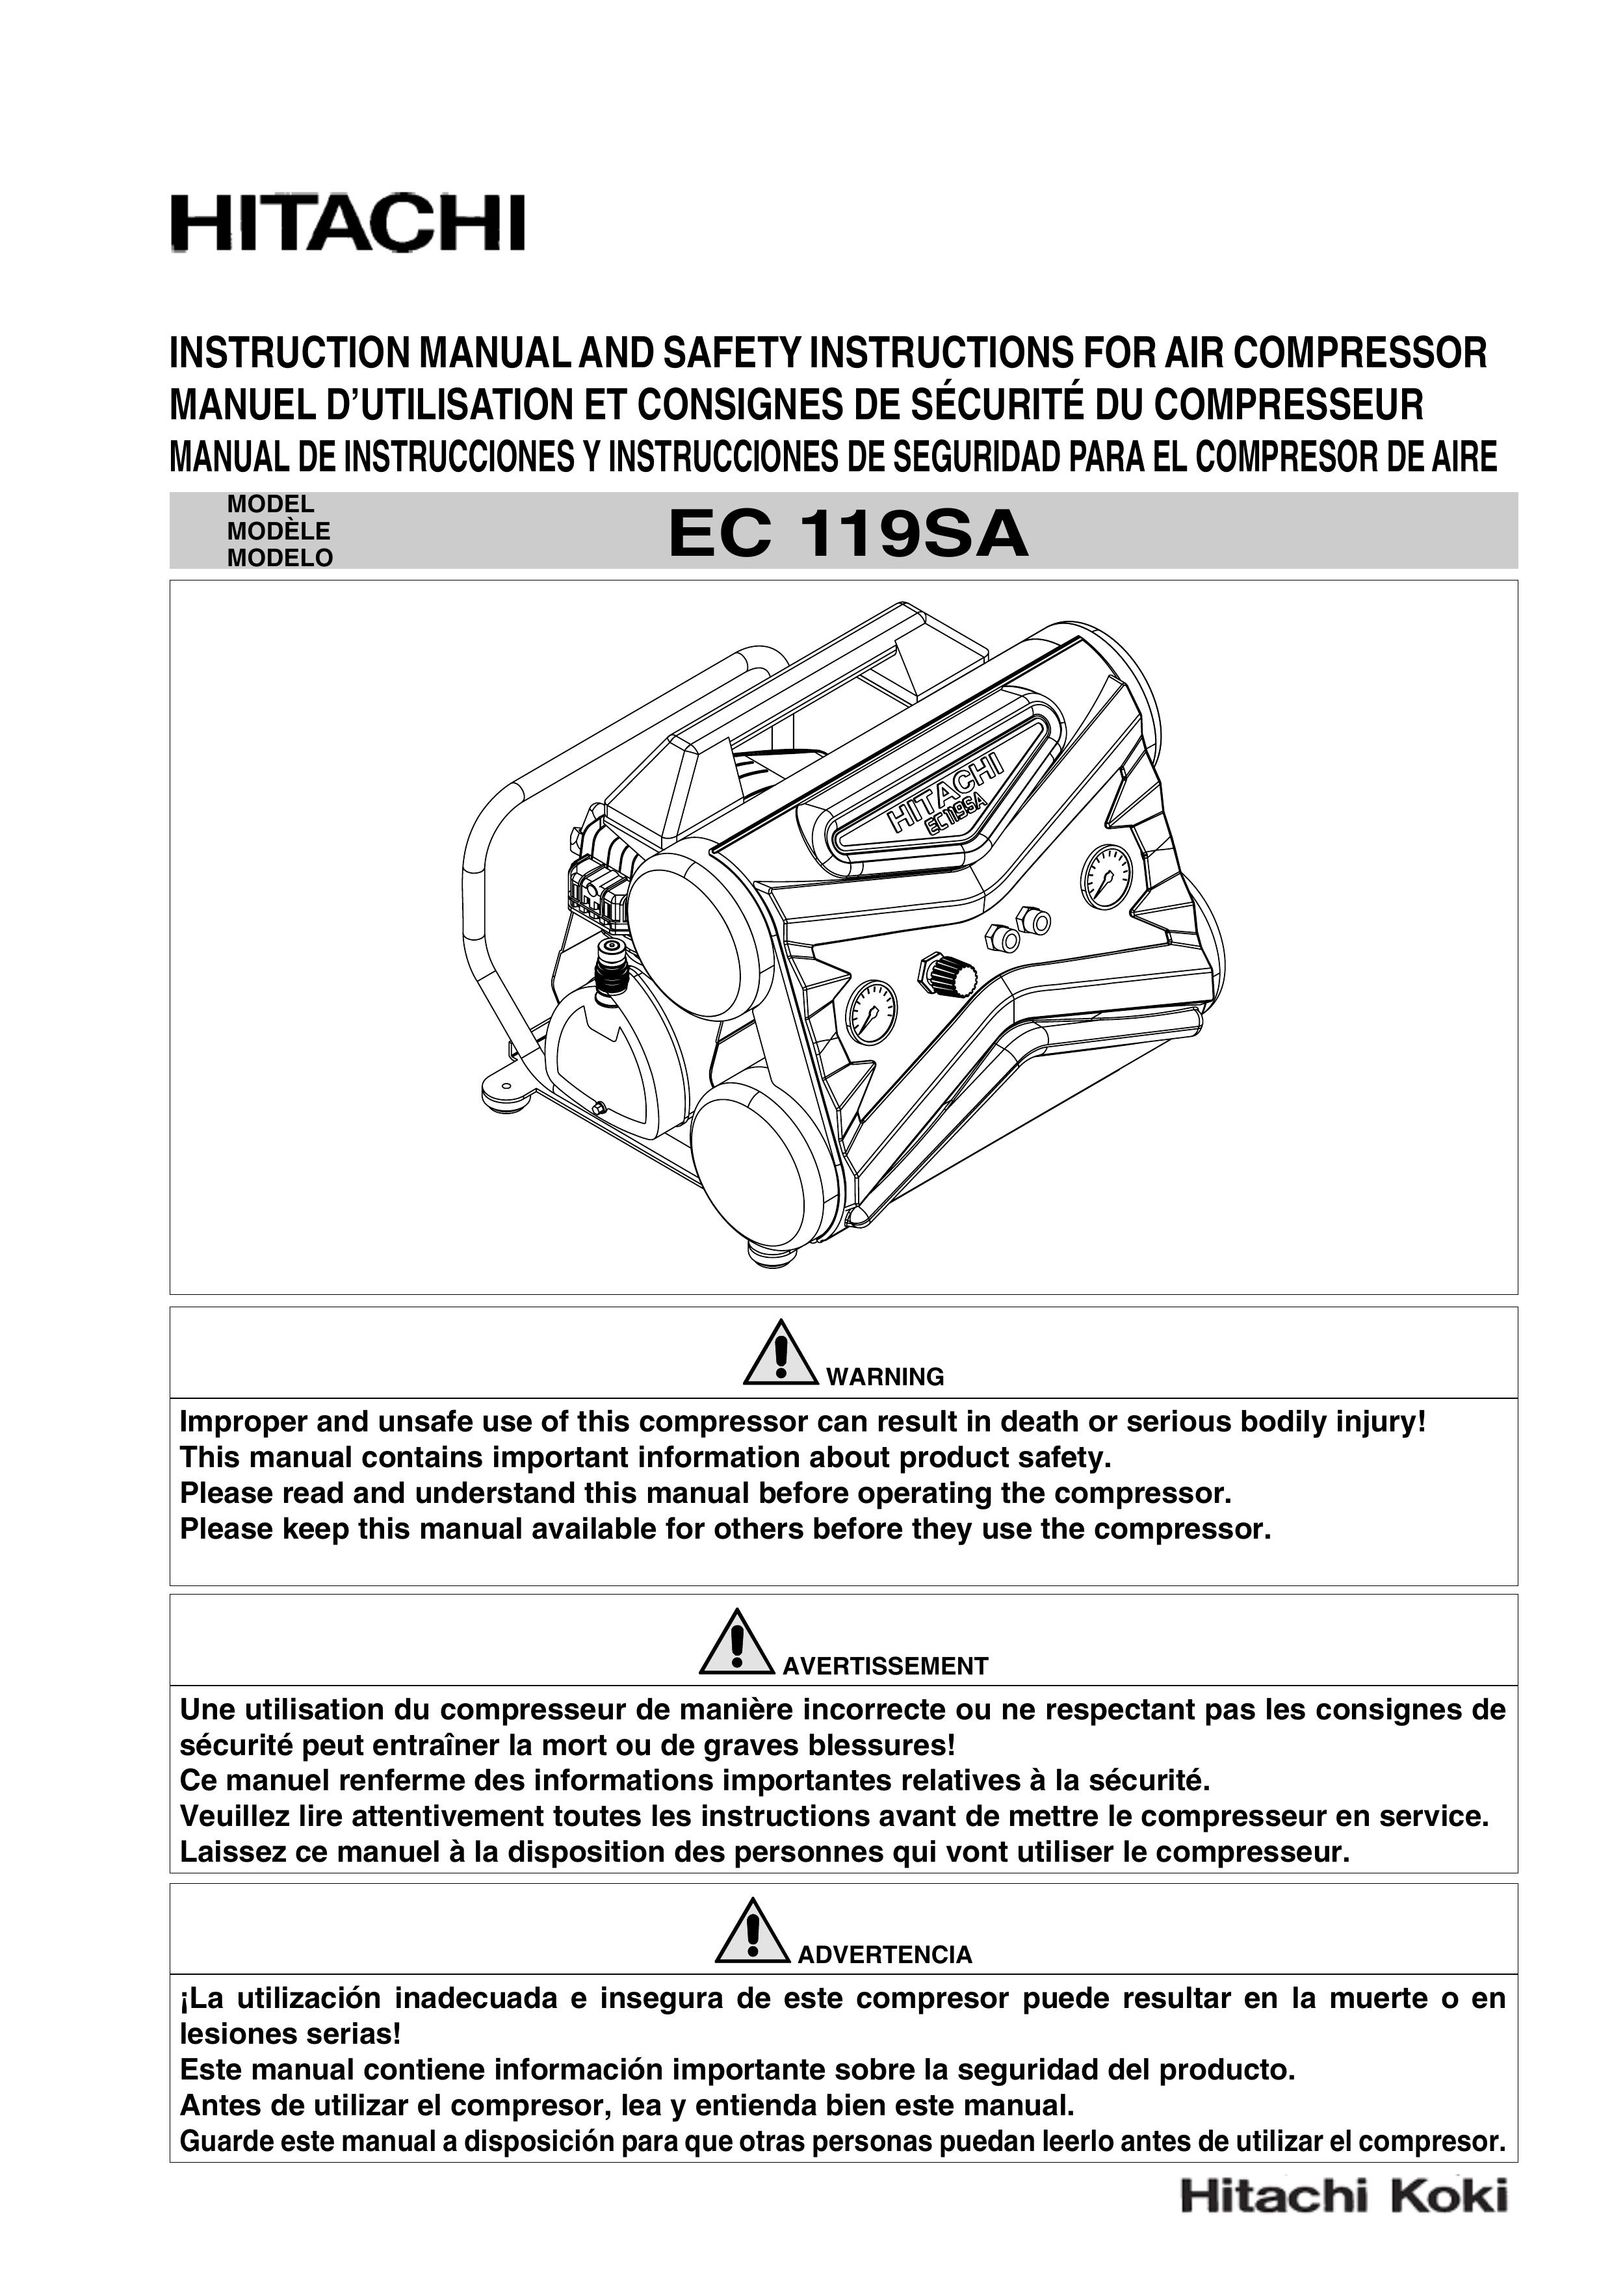 Hitachi EC 119SA Air Compressor User Manual